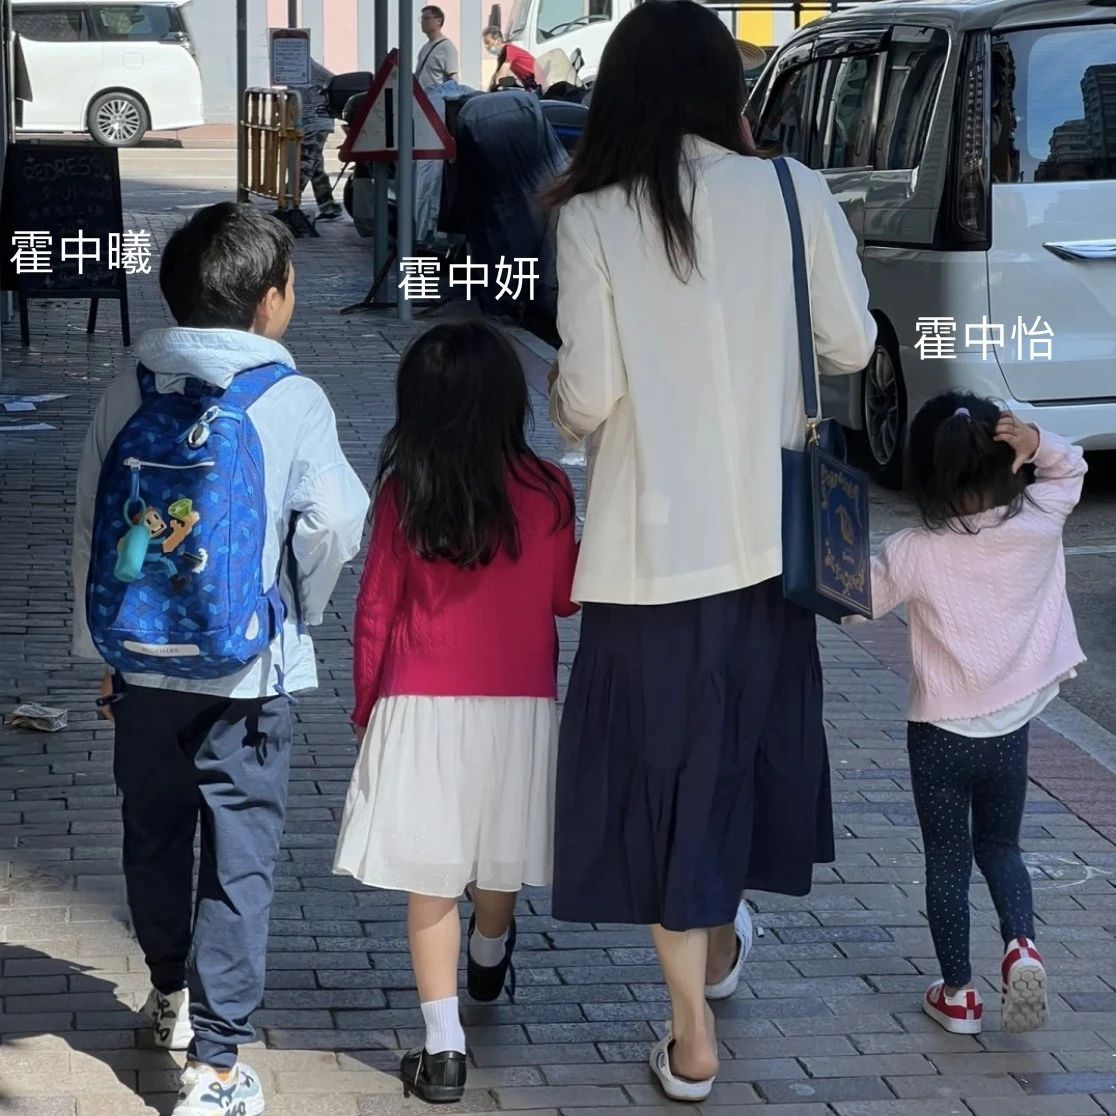 郭晶晶带3孩子上街,孩子穿着普通很朴素,她踩的帆布鞋还不到百元,但画面温馨幸福!